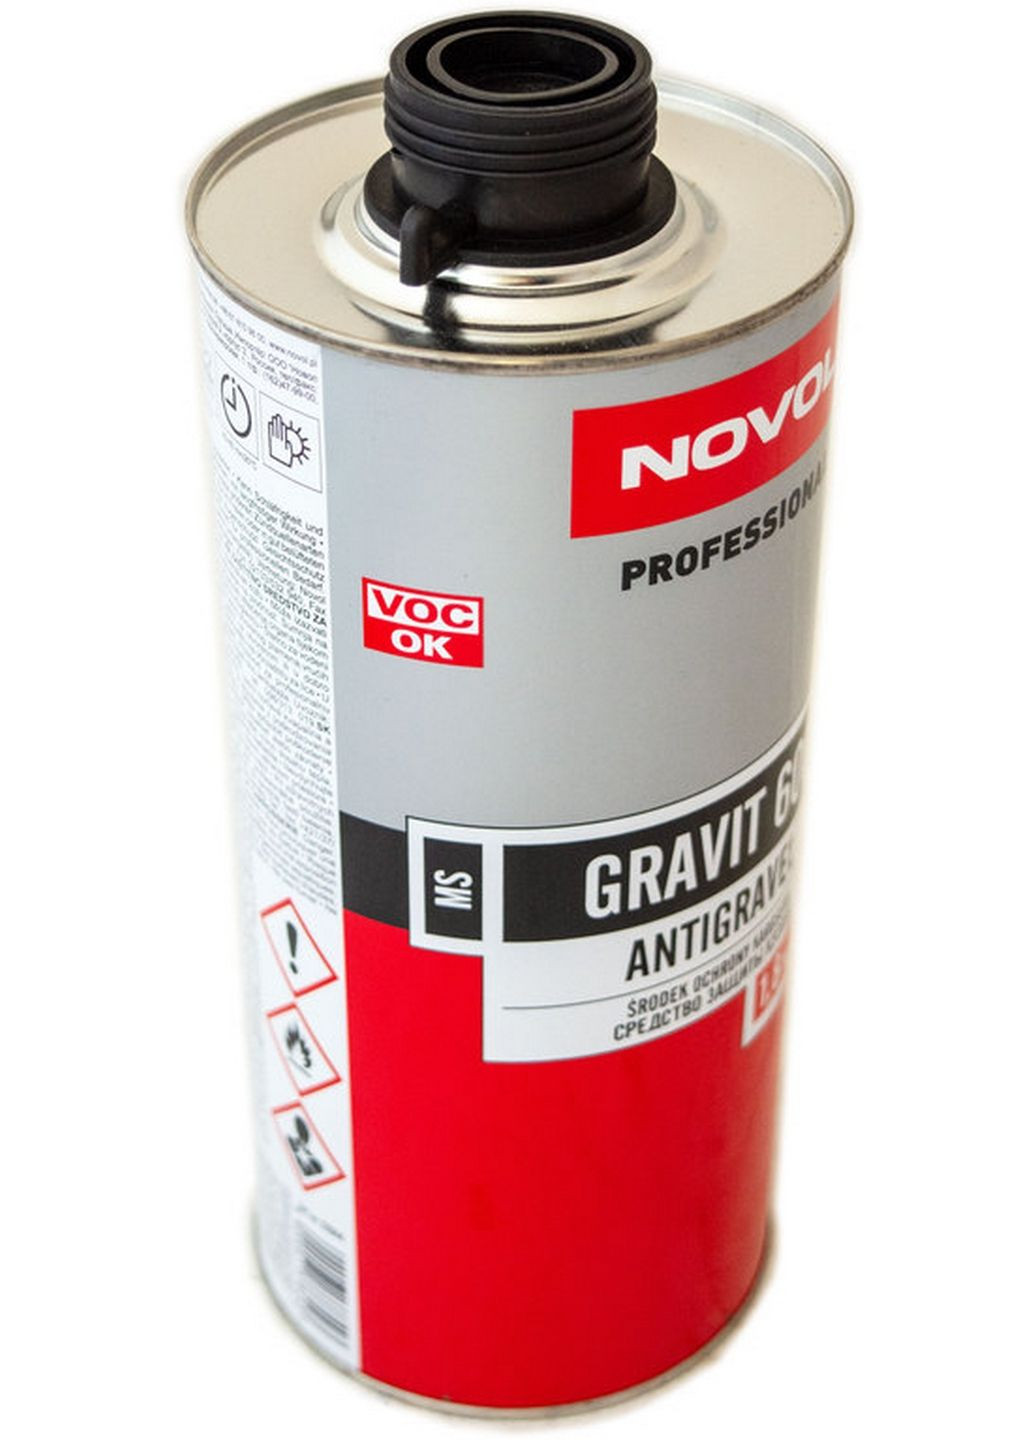 Баранник-протектор 1.8 кг Gravit 600 No Brand (289367021)